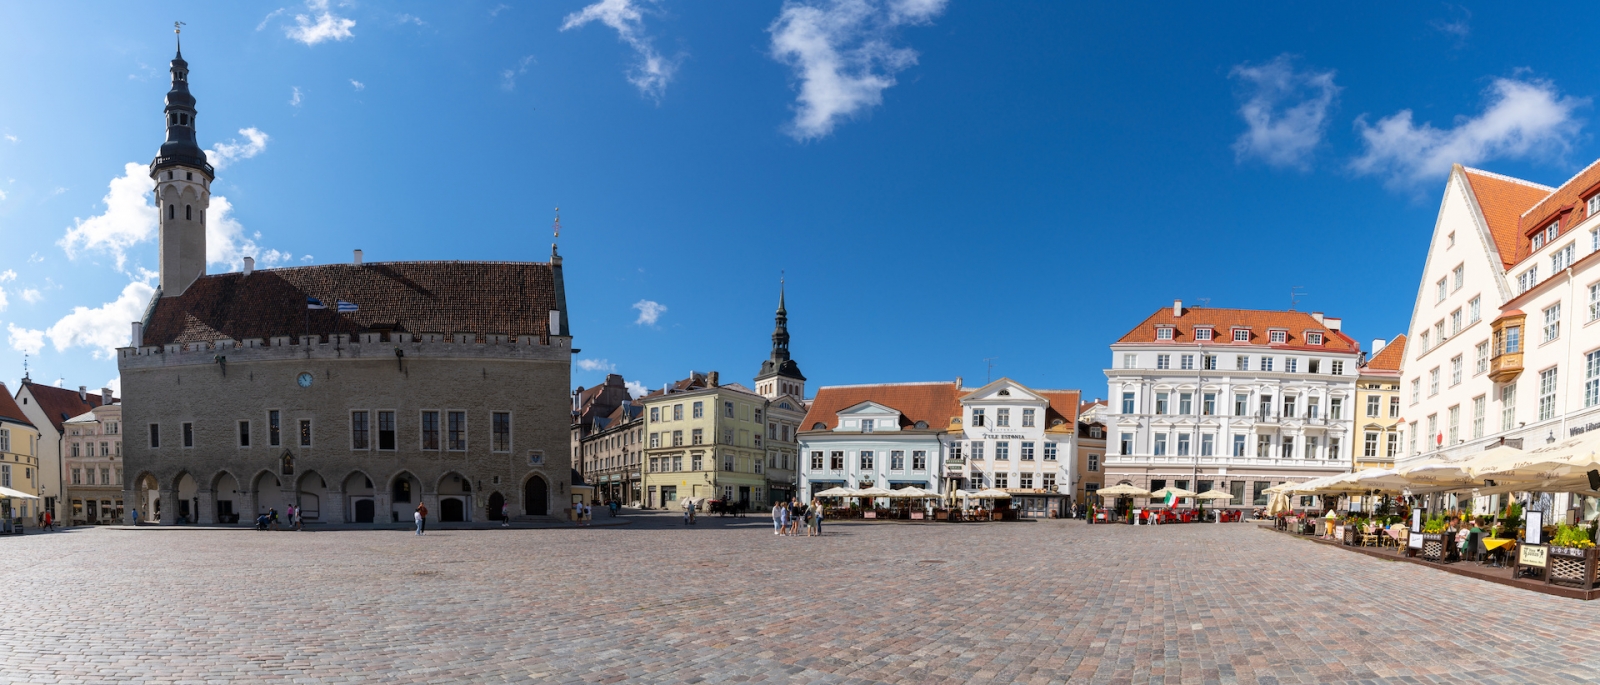 Blick auf den Raekoja-Platz im historischen Stadtzentrum von Tallinn